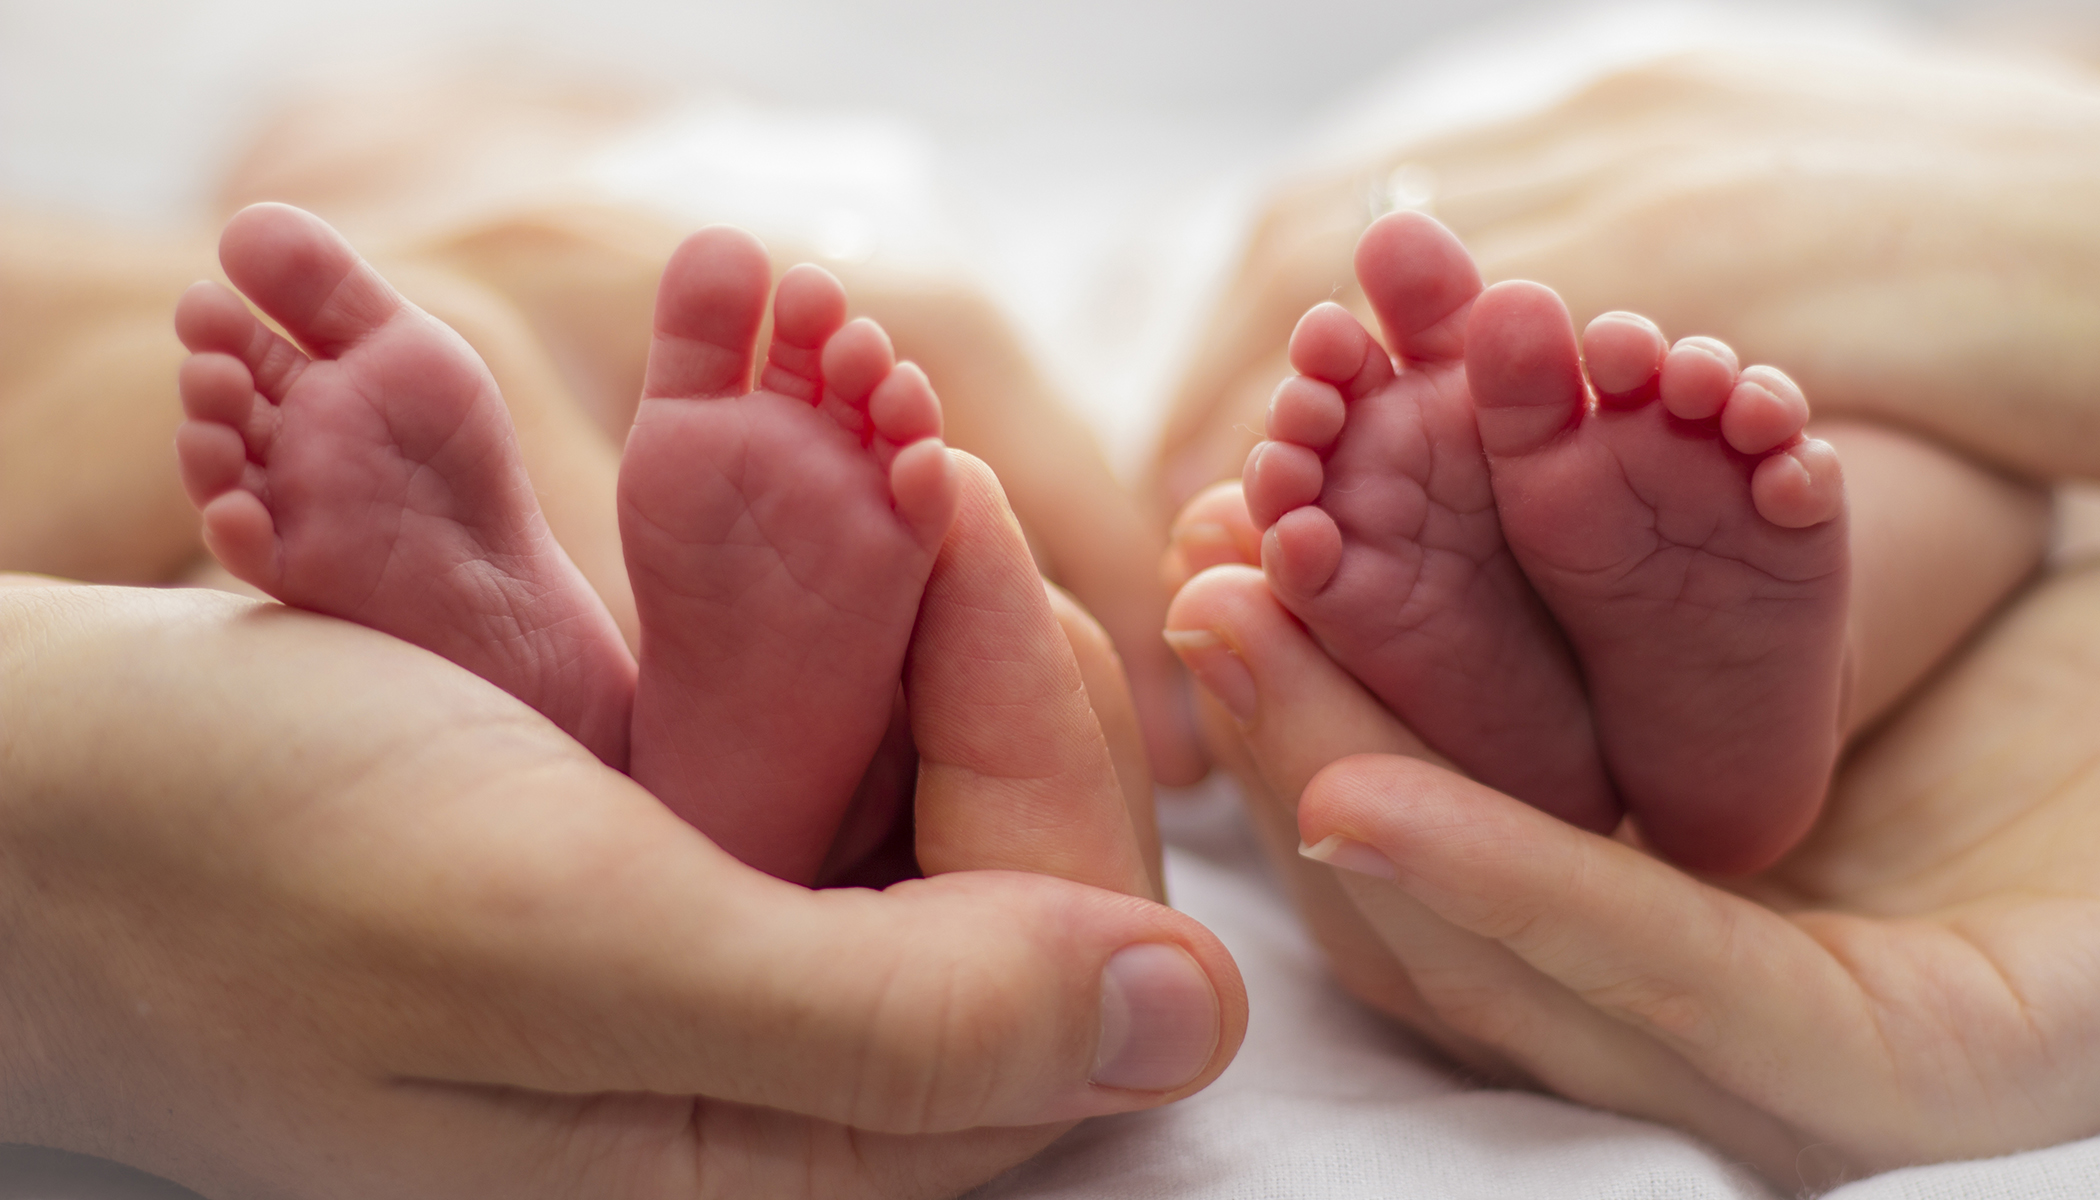 Bu ikiz bebekler farklı yaşlarda: ‘Gerçekten alışılmadık bir durum’